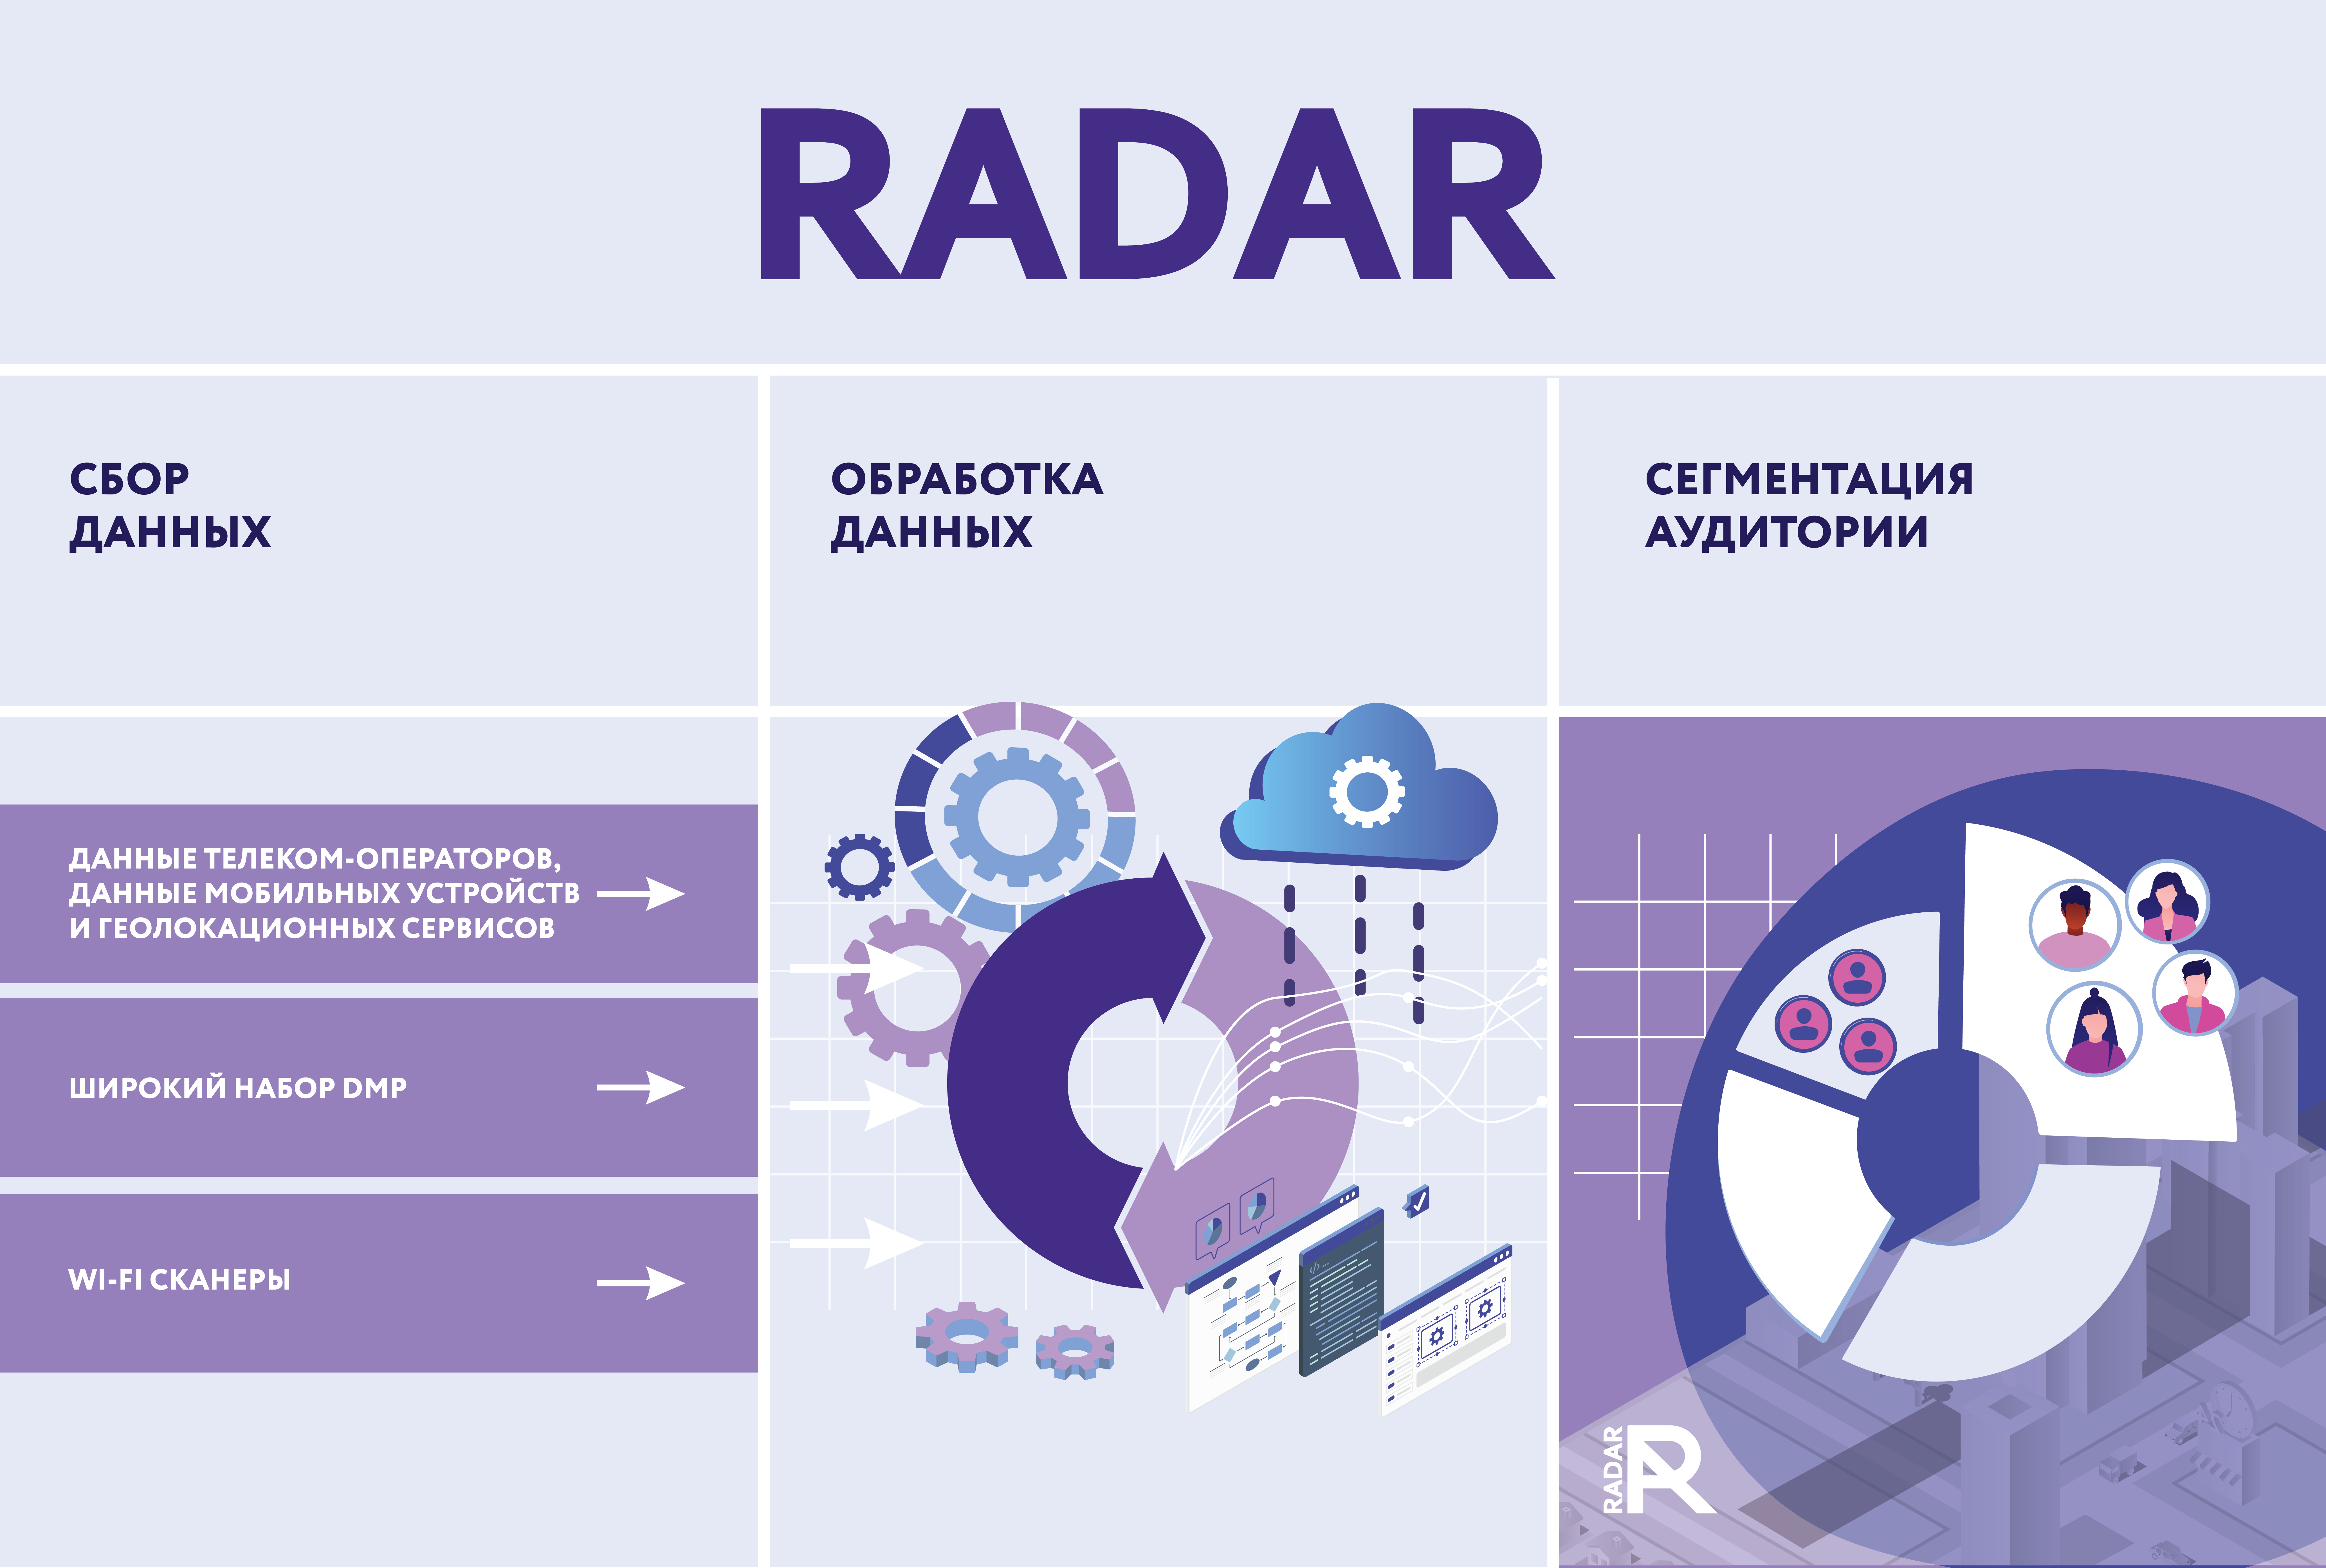 Кейс Radar: как с помощью big data создать систему измерения аудитории для рынка наружной рекламы